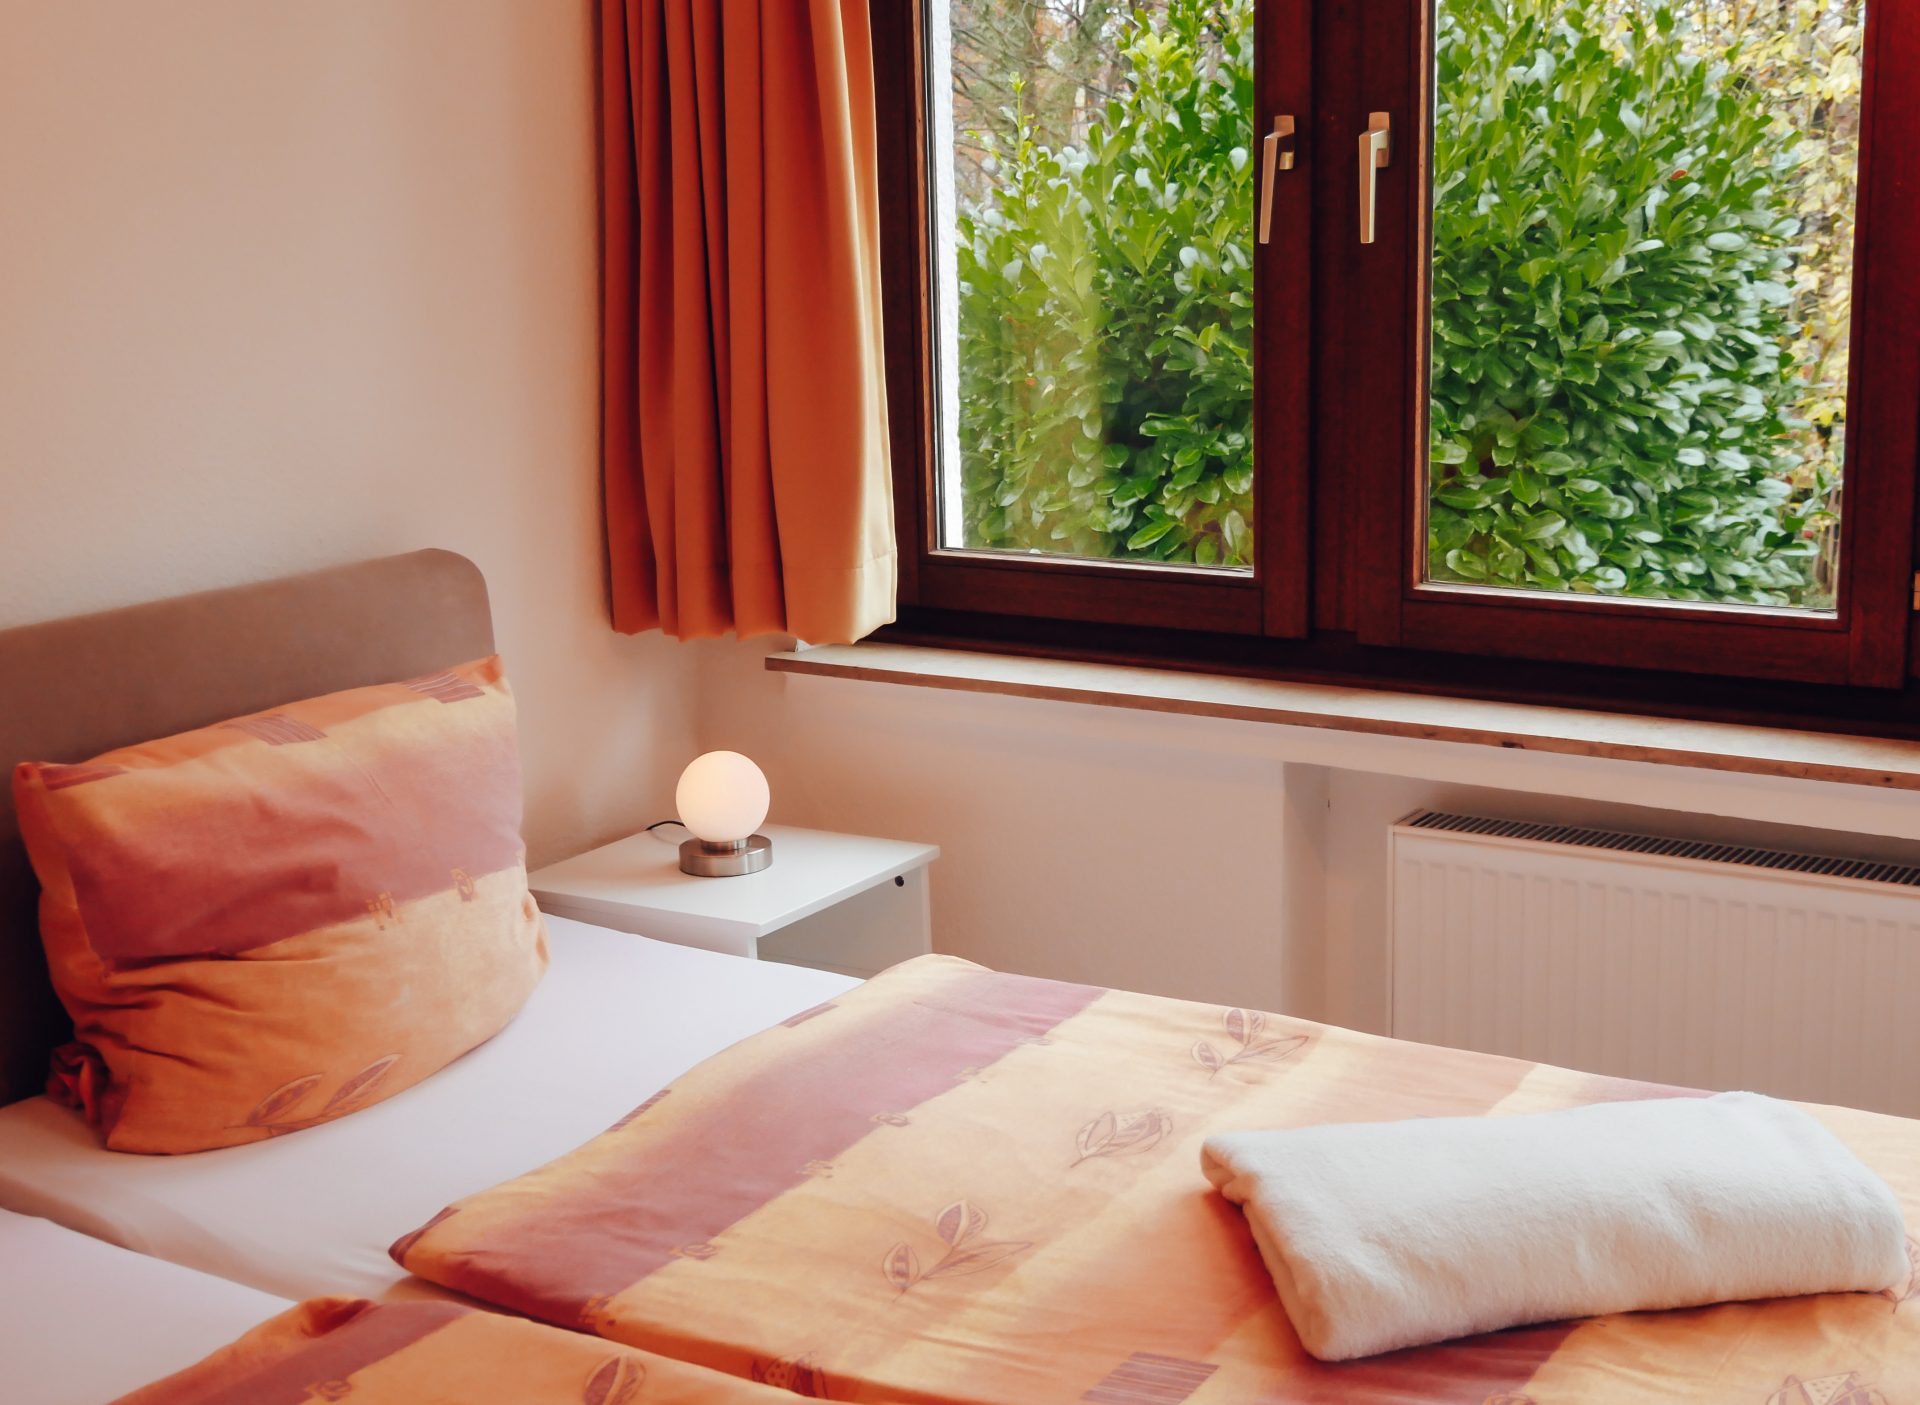 Zimmer in Lindlar » Bellevue im Bergischen Land » frisch bezogenes Bett mit bunter Bettwäsche